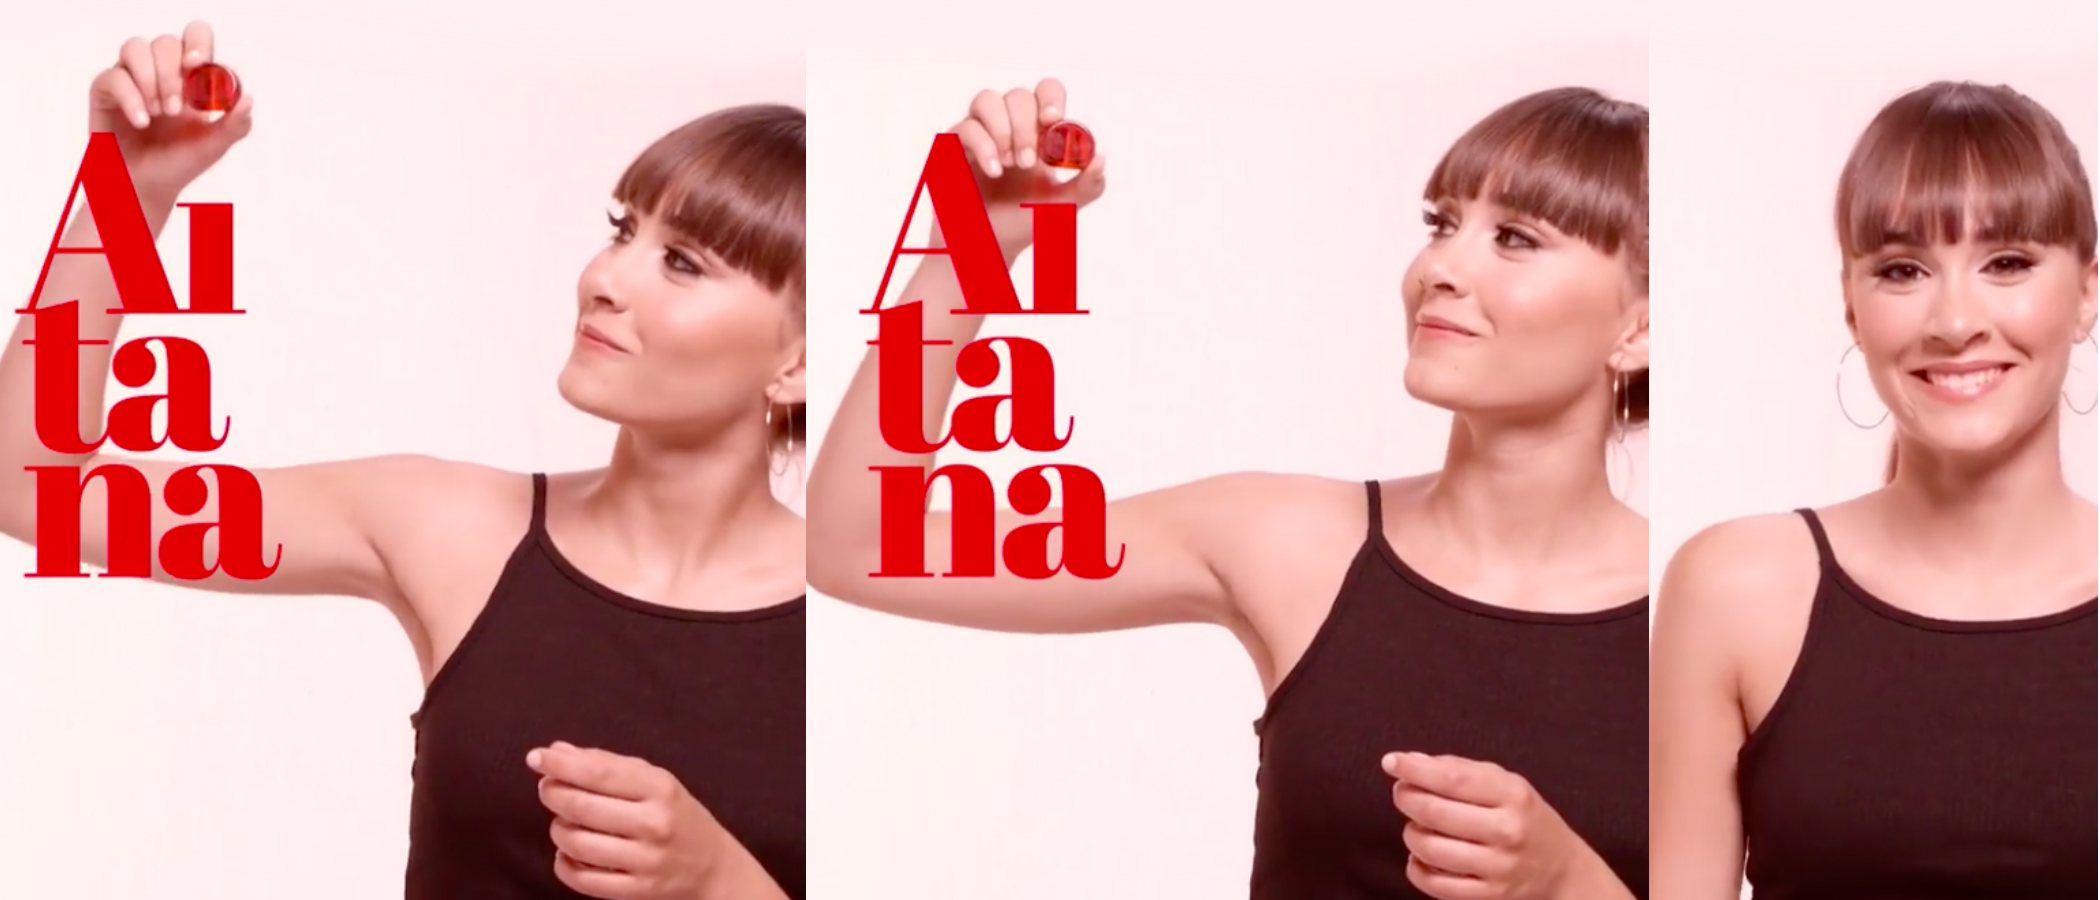 Aitana Ocaña prepara el lanzamiento de 'Aitana', su primera fragancia femenina